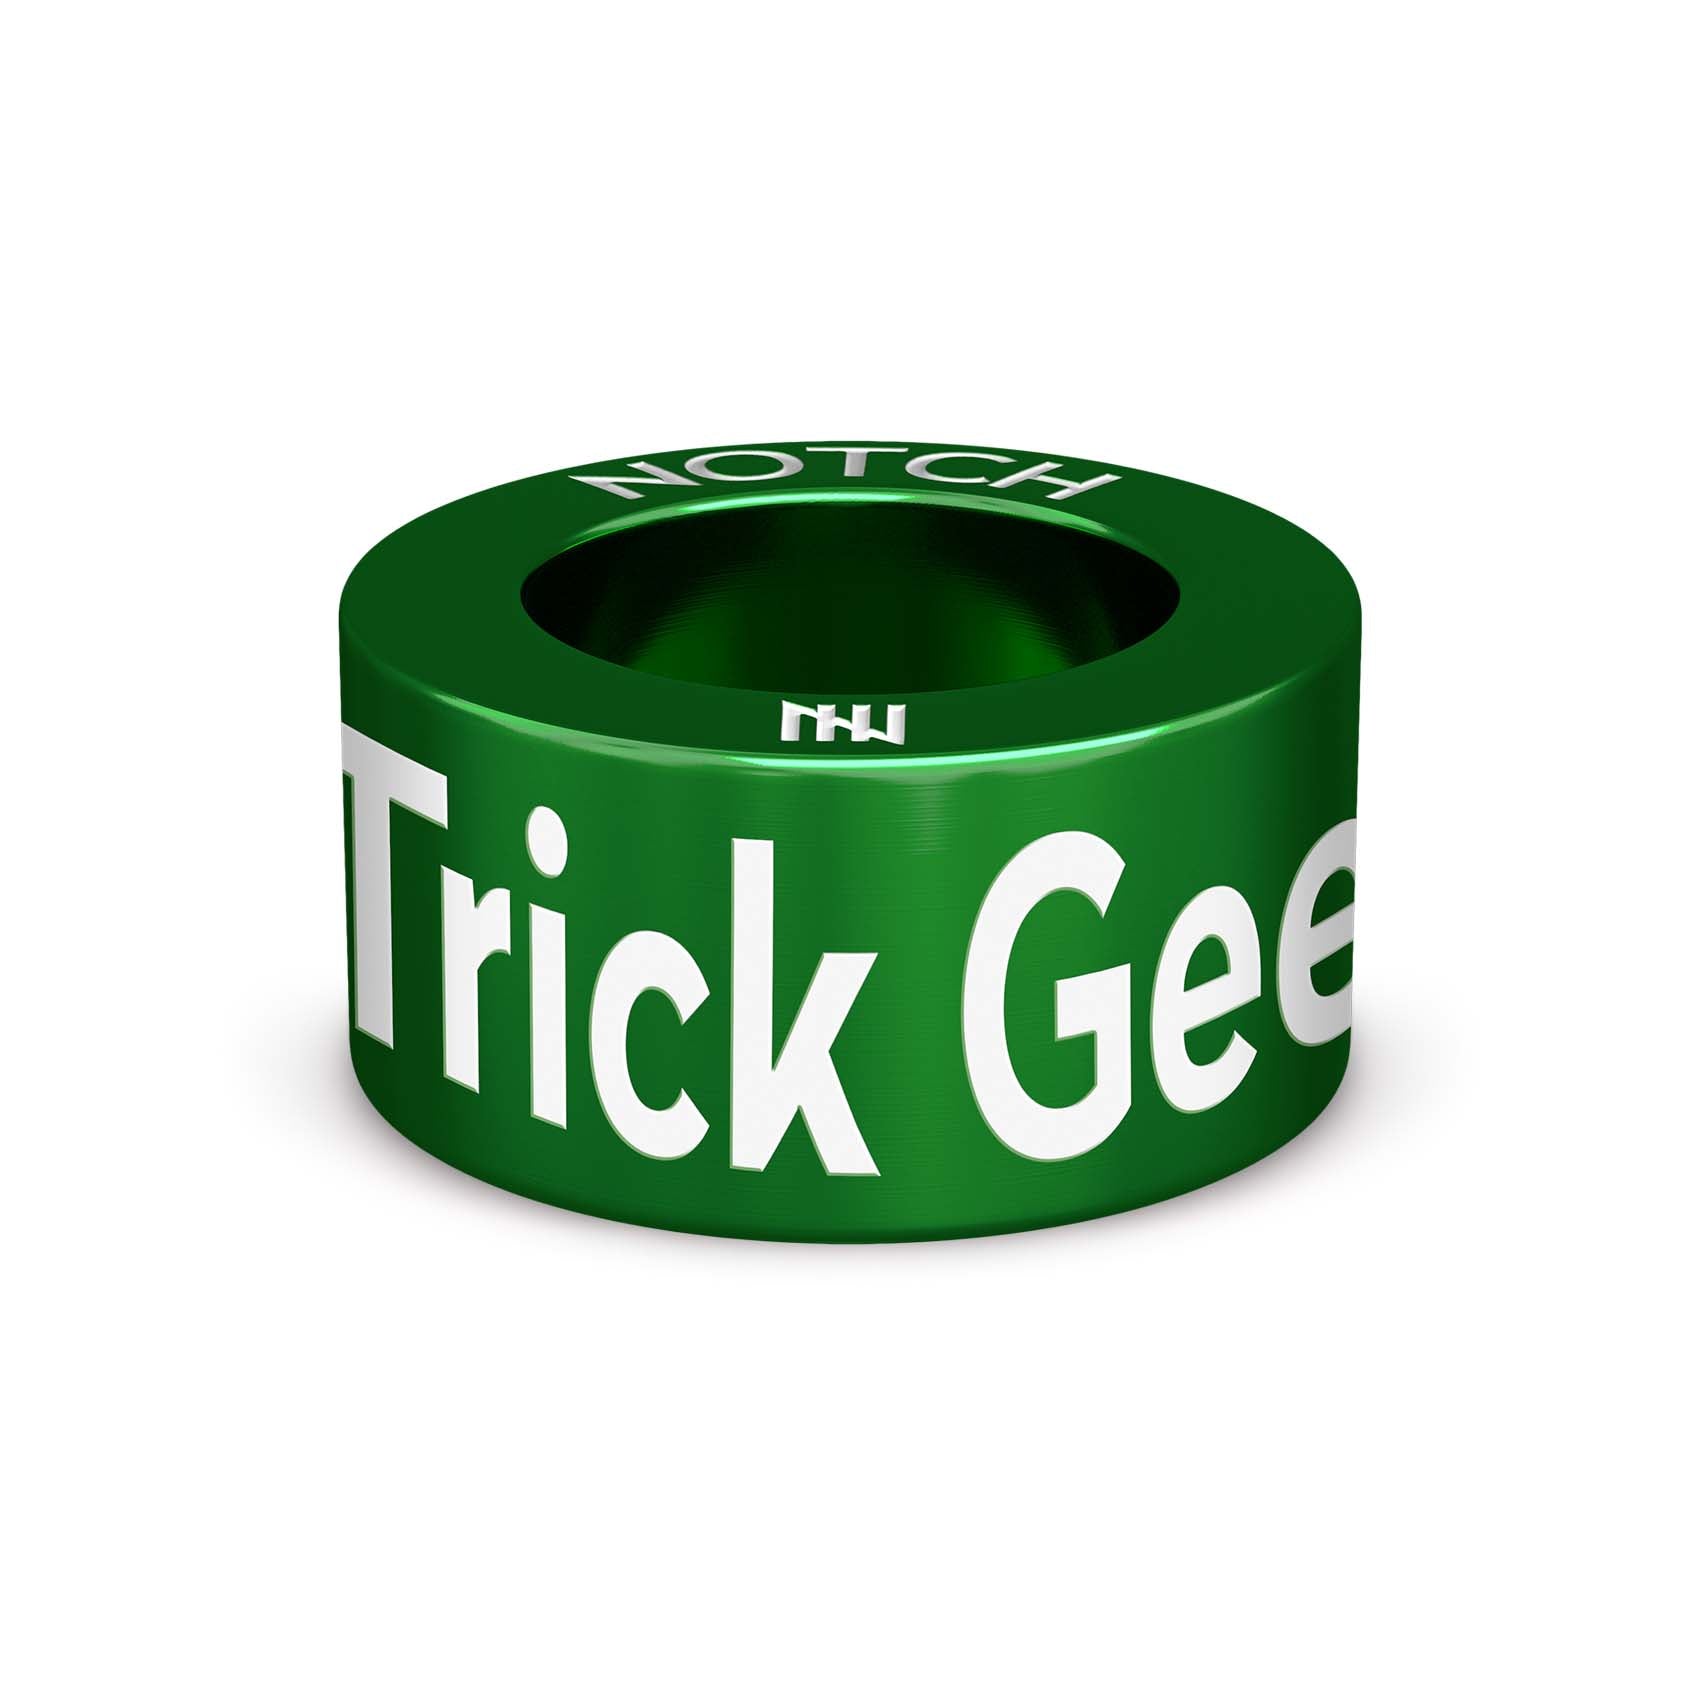 Trick Geek Awards NOTCH Charm